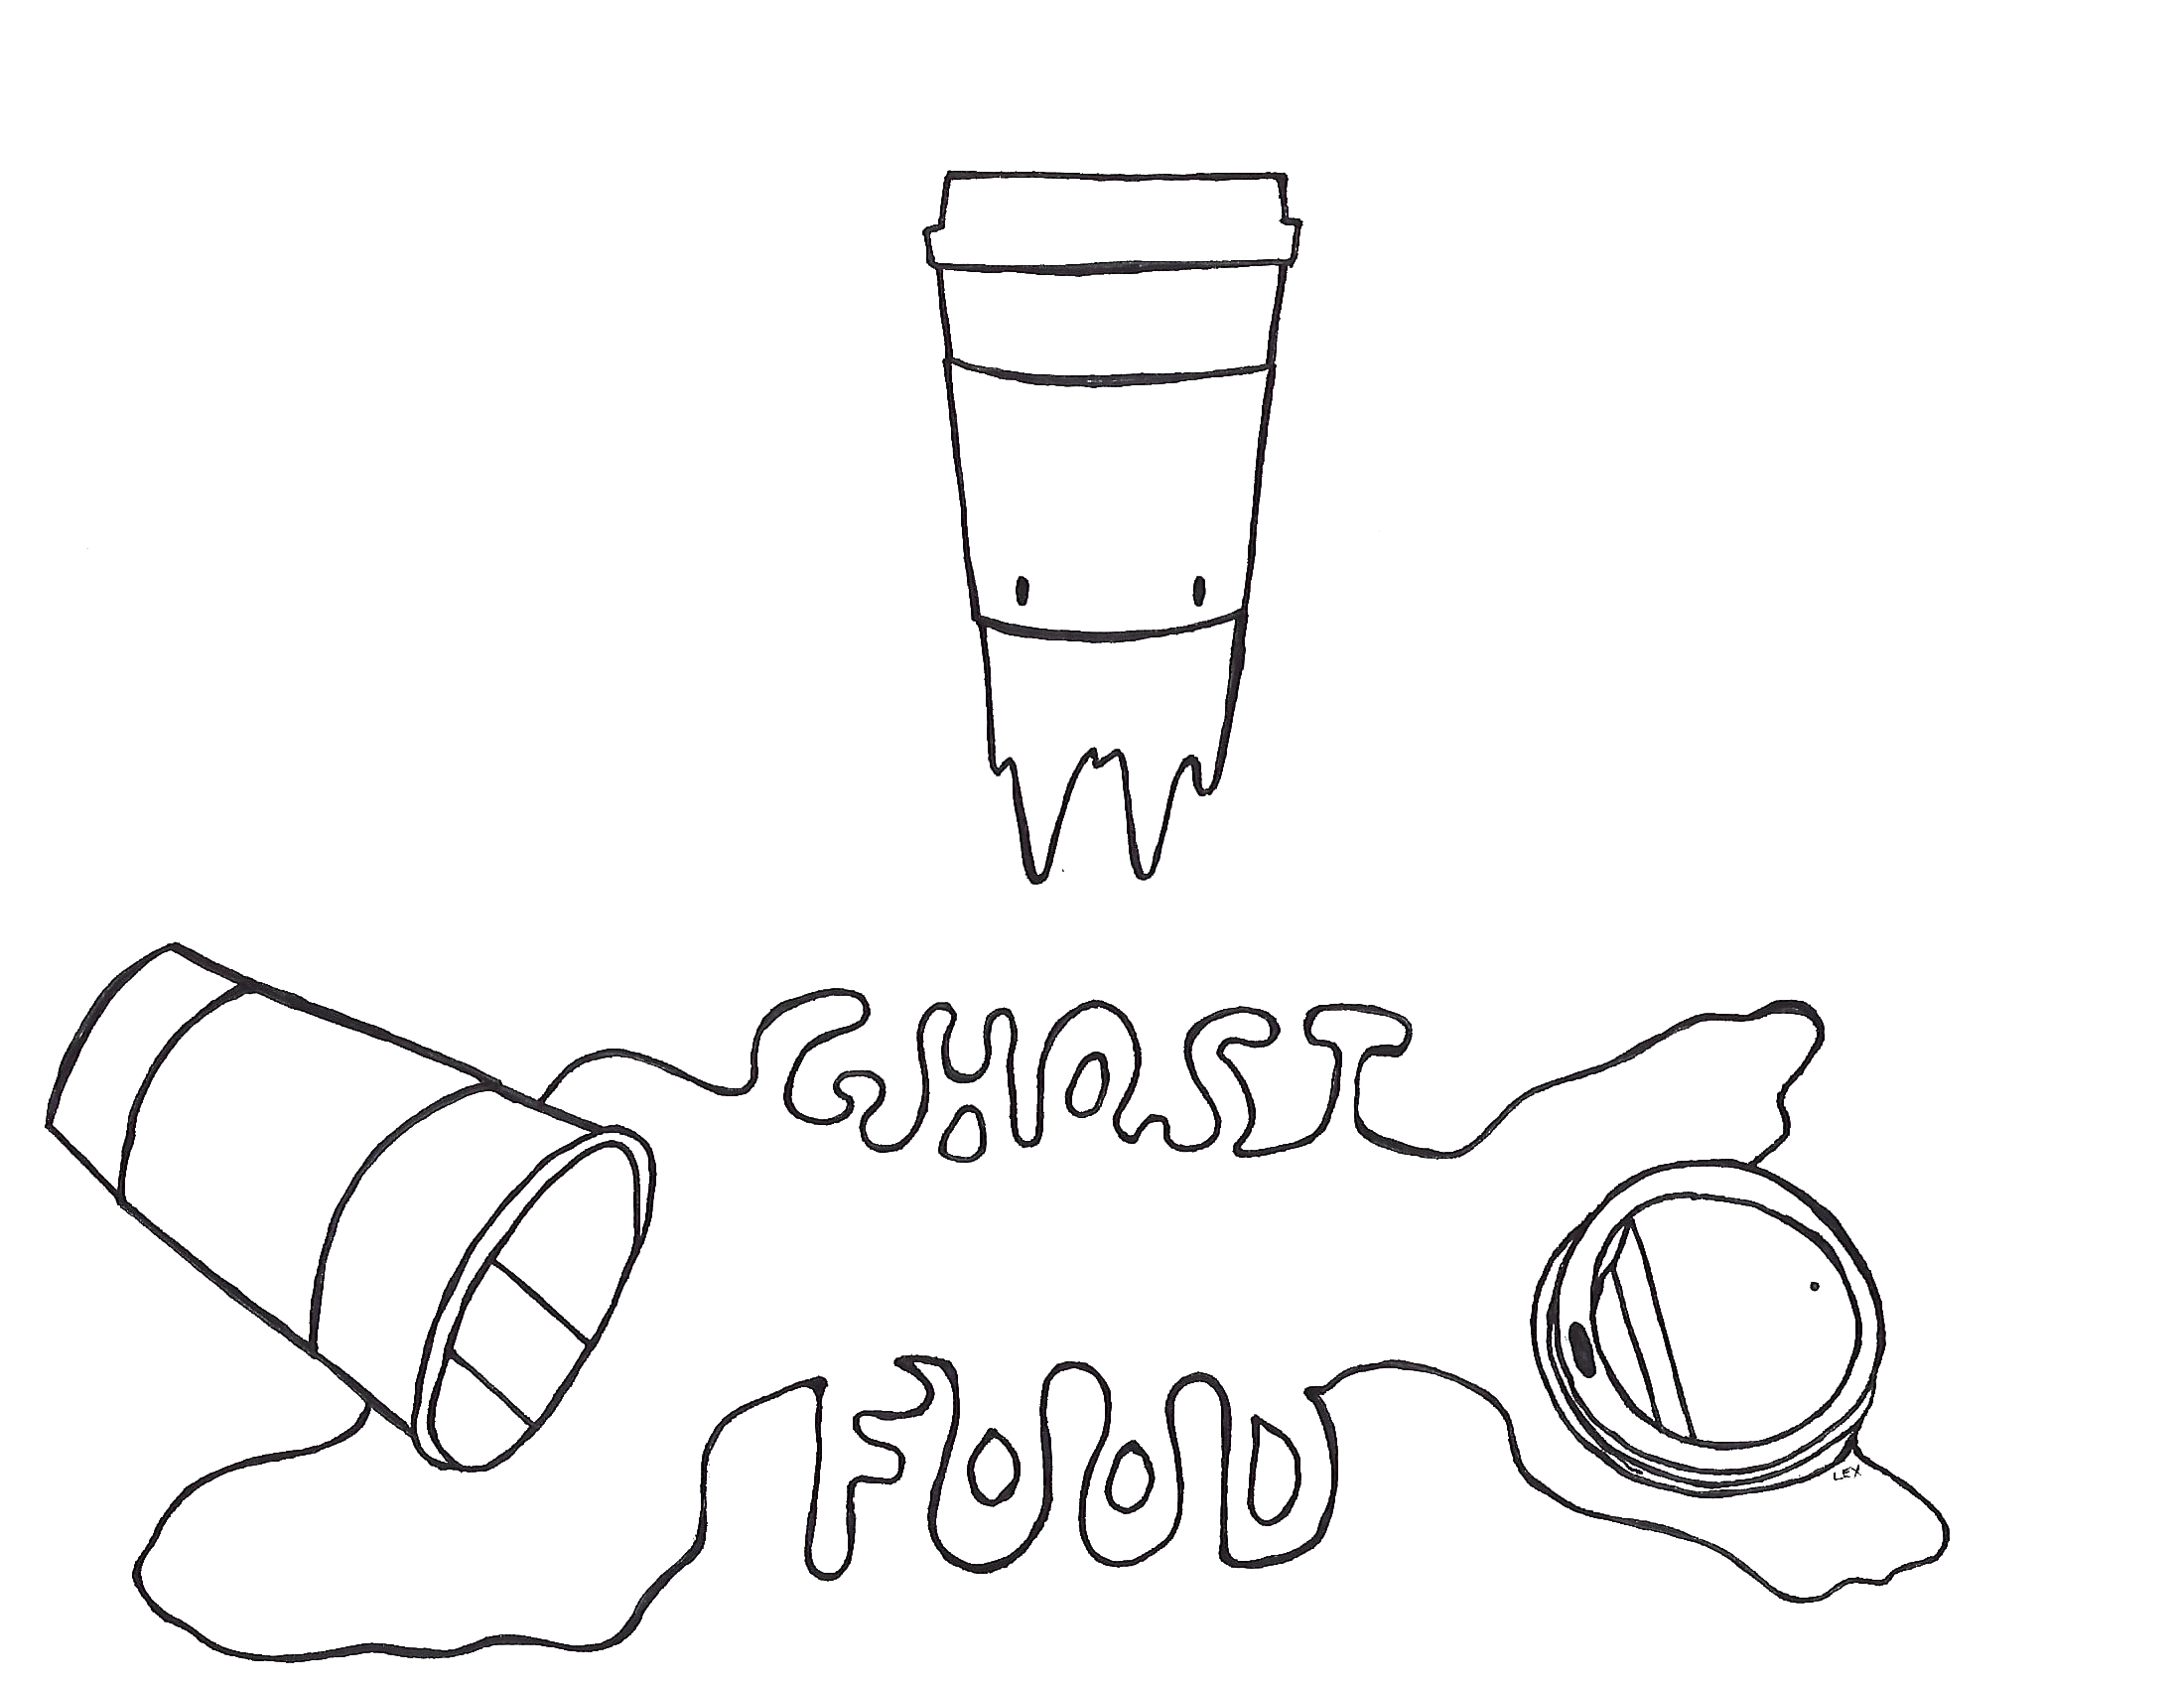 Ghost Food logo_clean.jpg